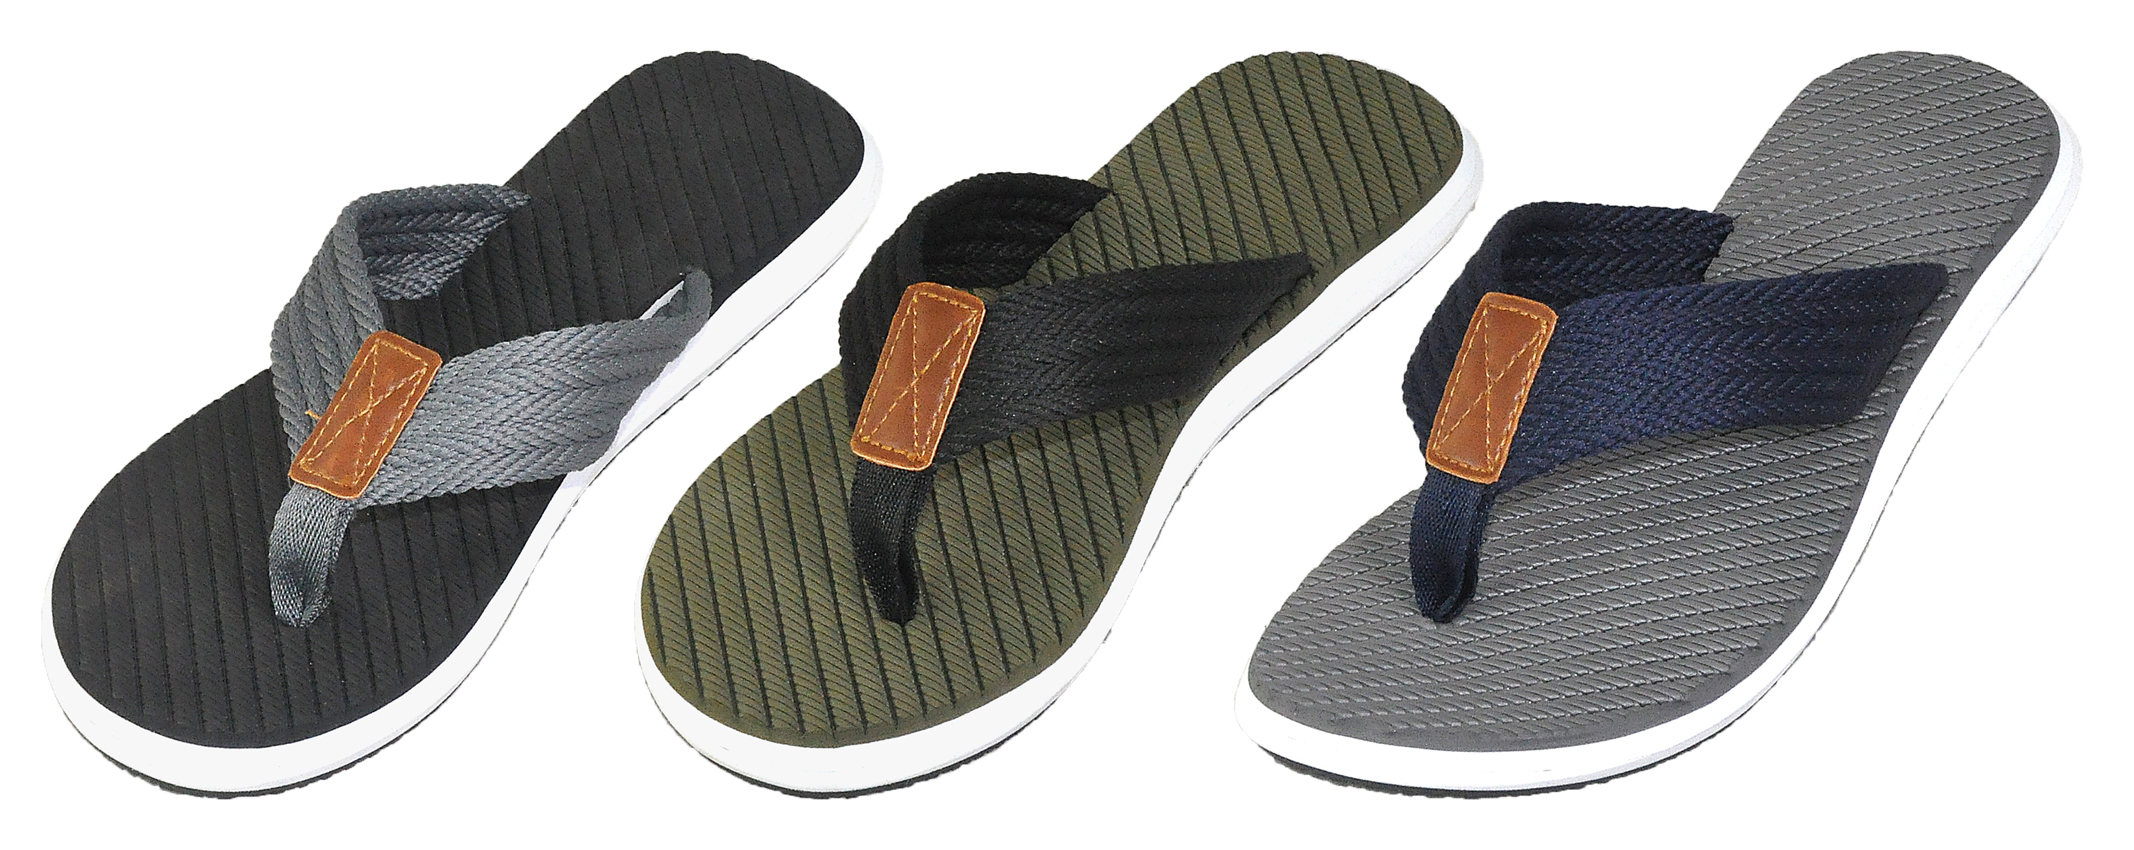 Men's Thong Sandals Flip Flops w/ Cloth Straps & Faux LEATHER Patch Embelishment